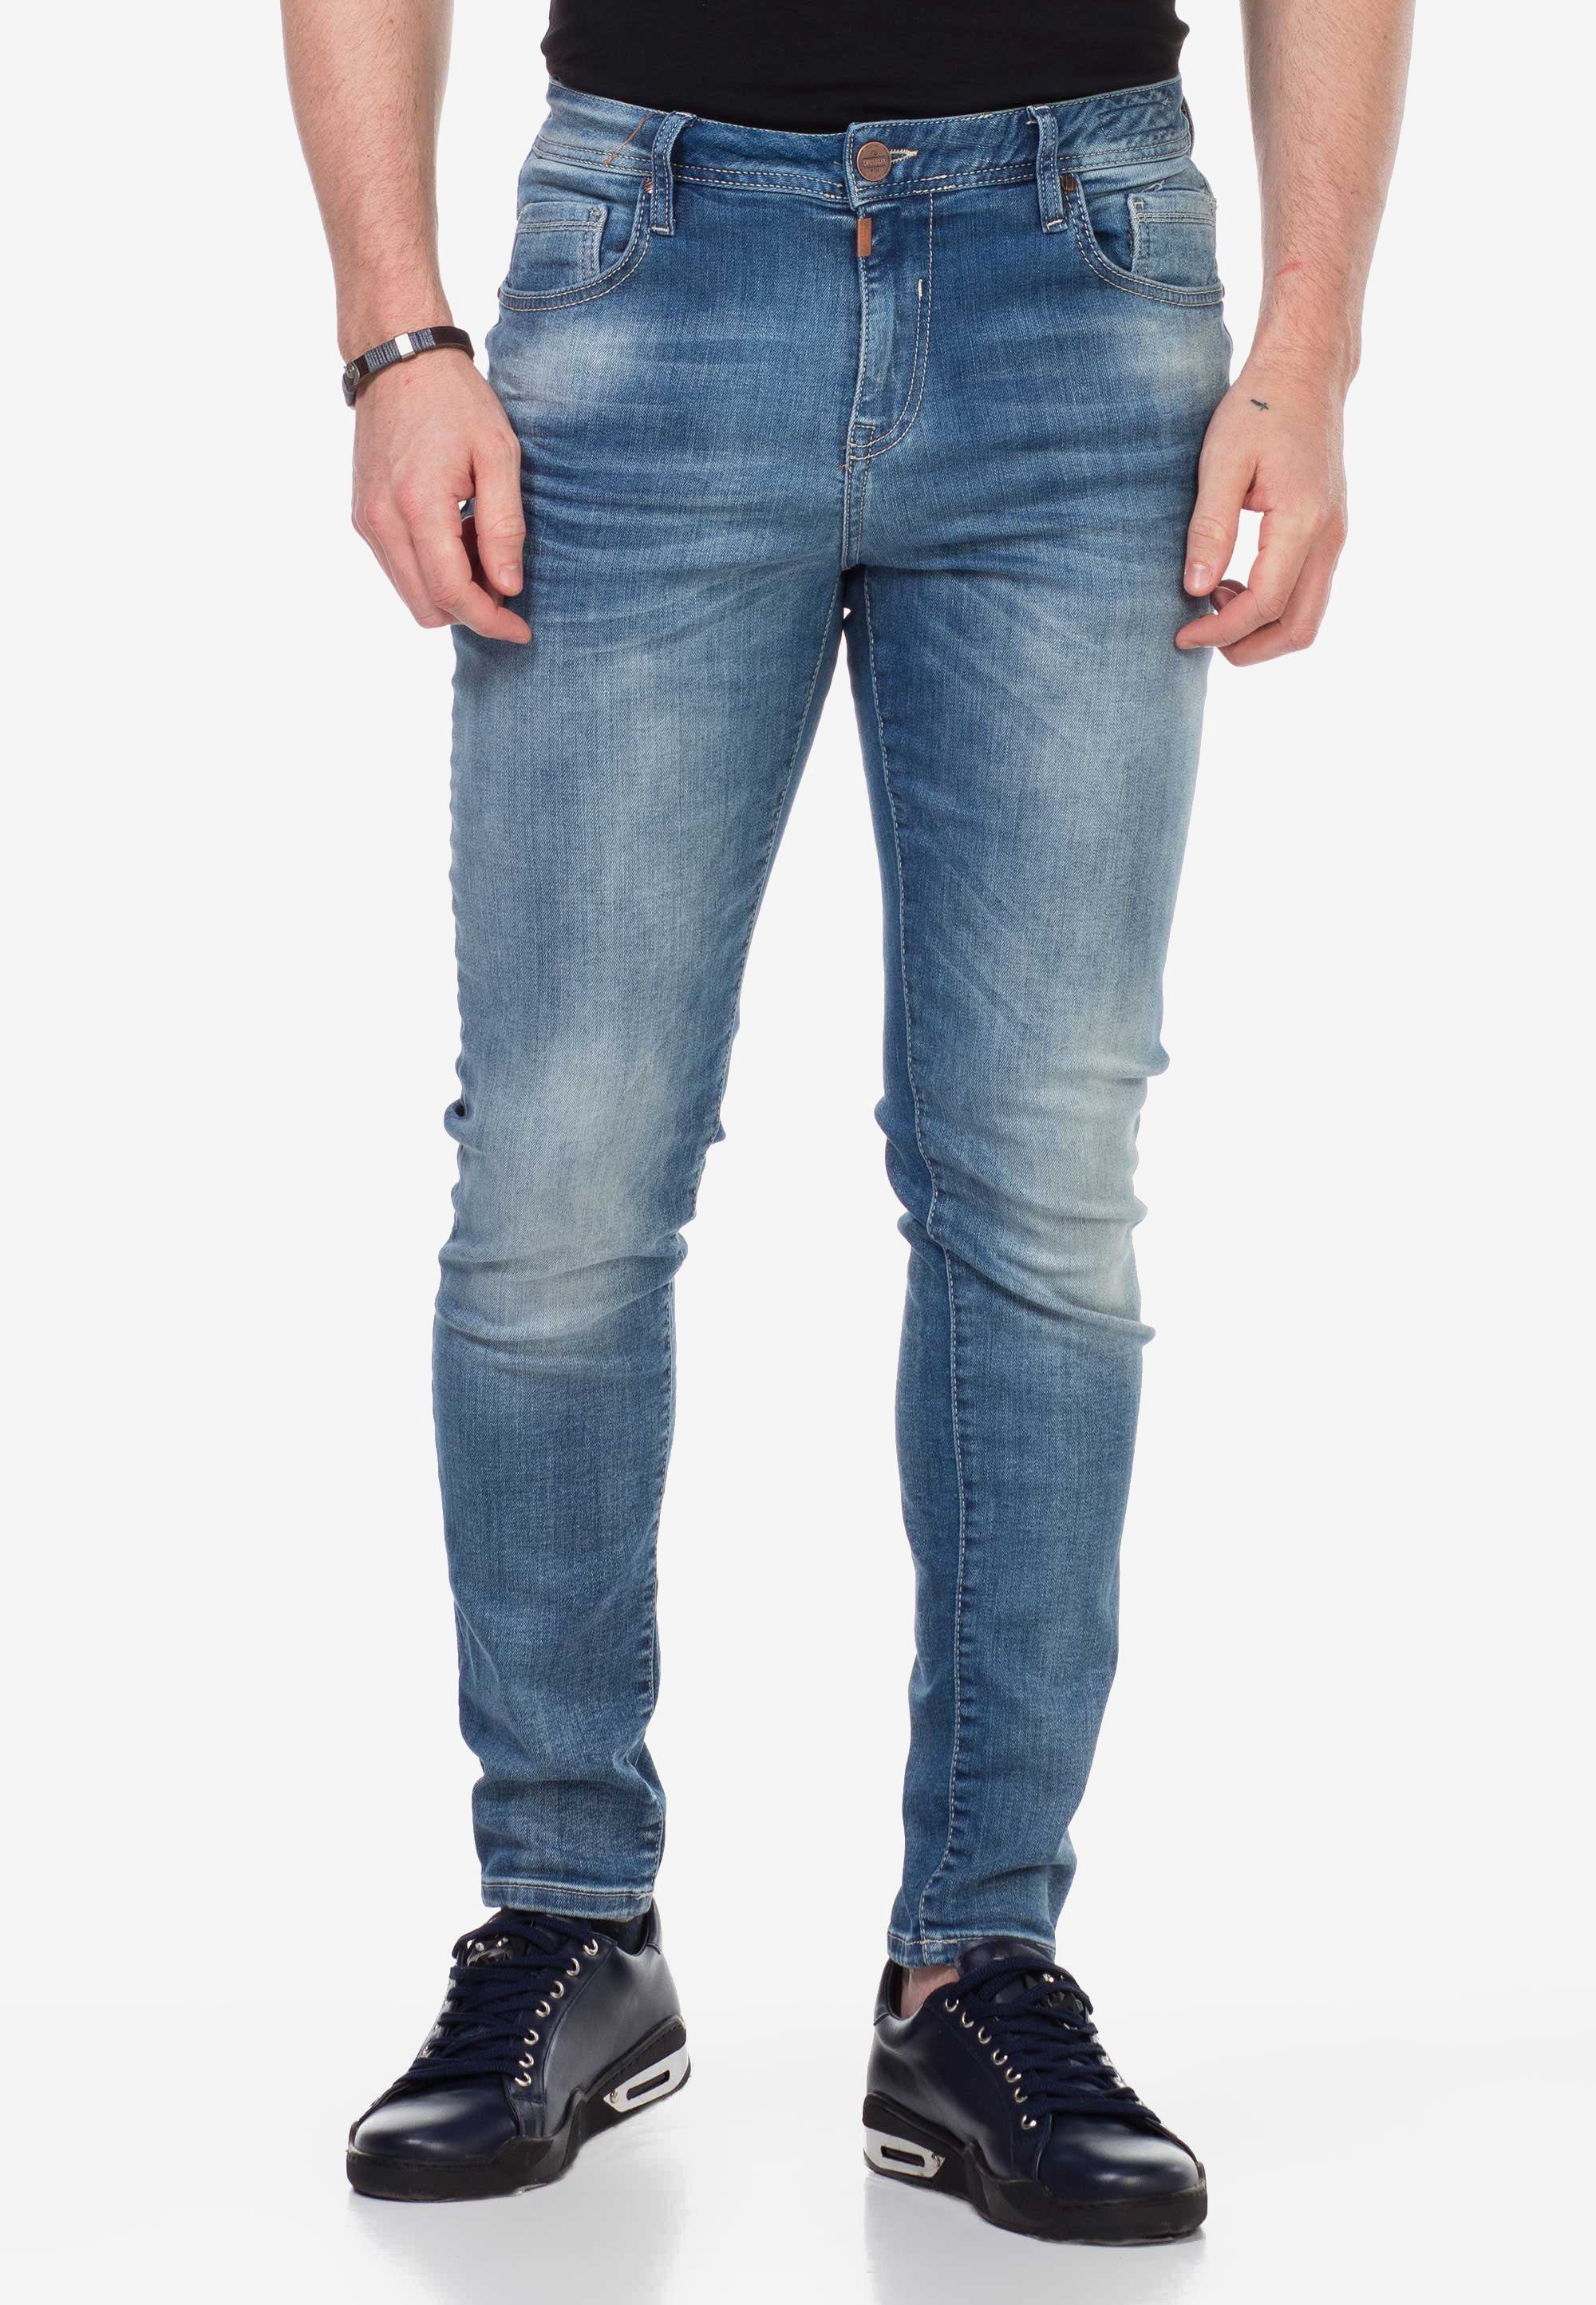 Cipo & mit Baxx verwaschenen Look Slim-fit-Jeans